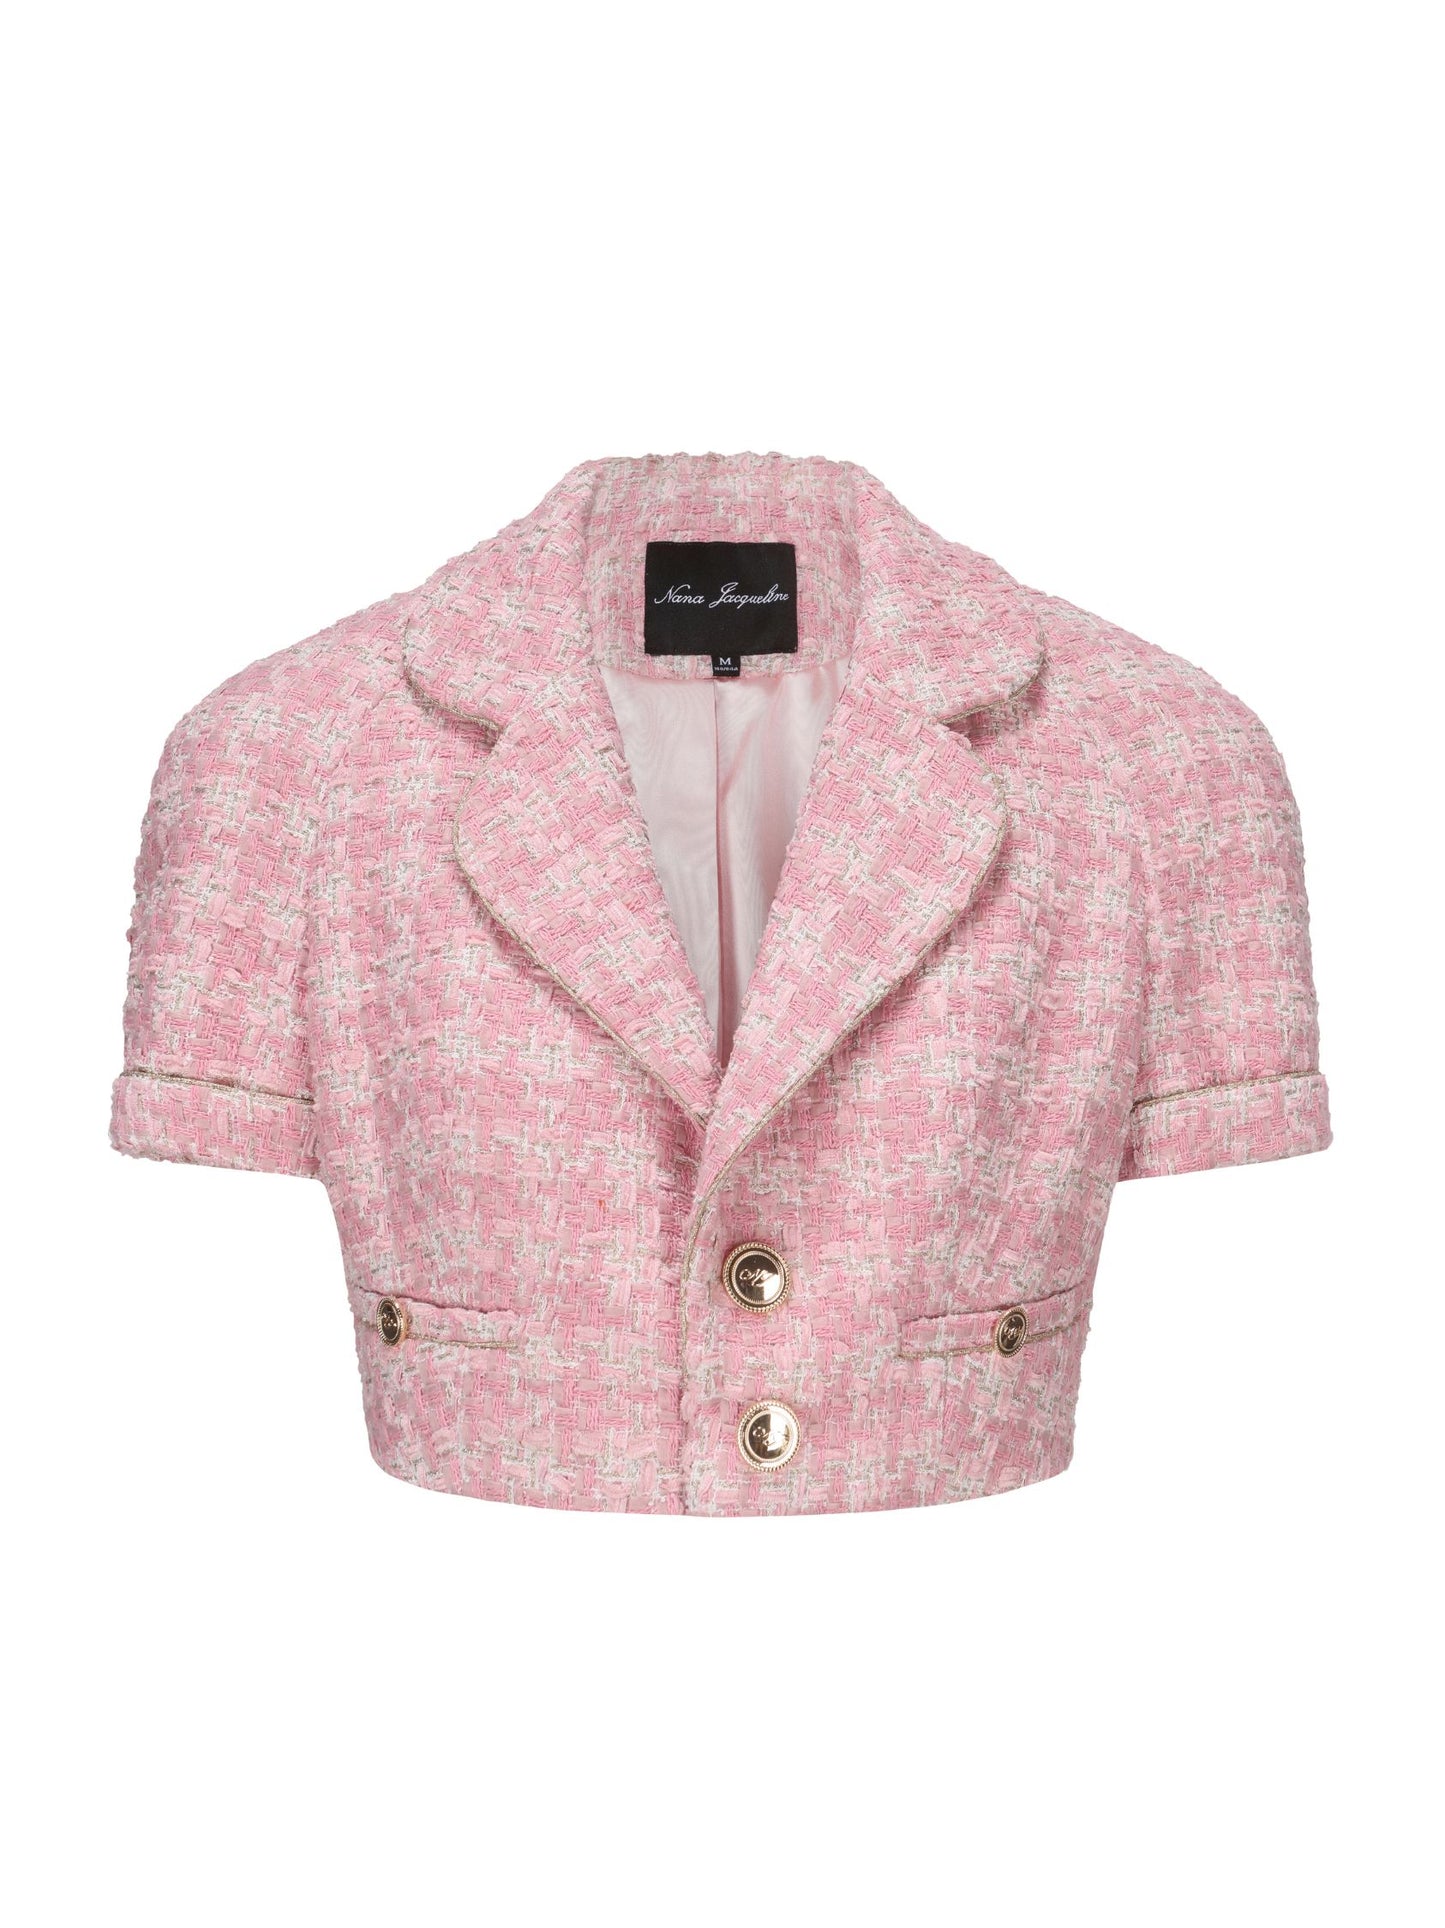 Chelsea Tweed Top  (Pink) (Final Sale)